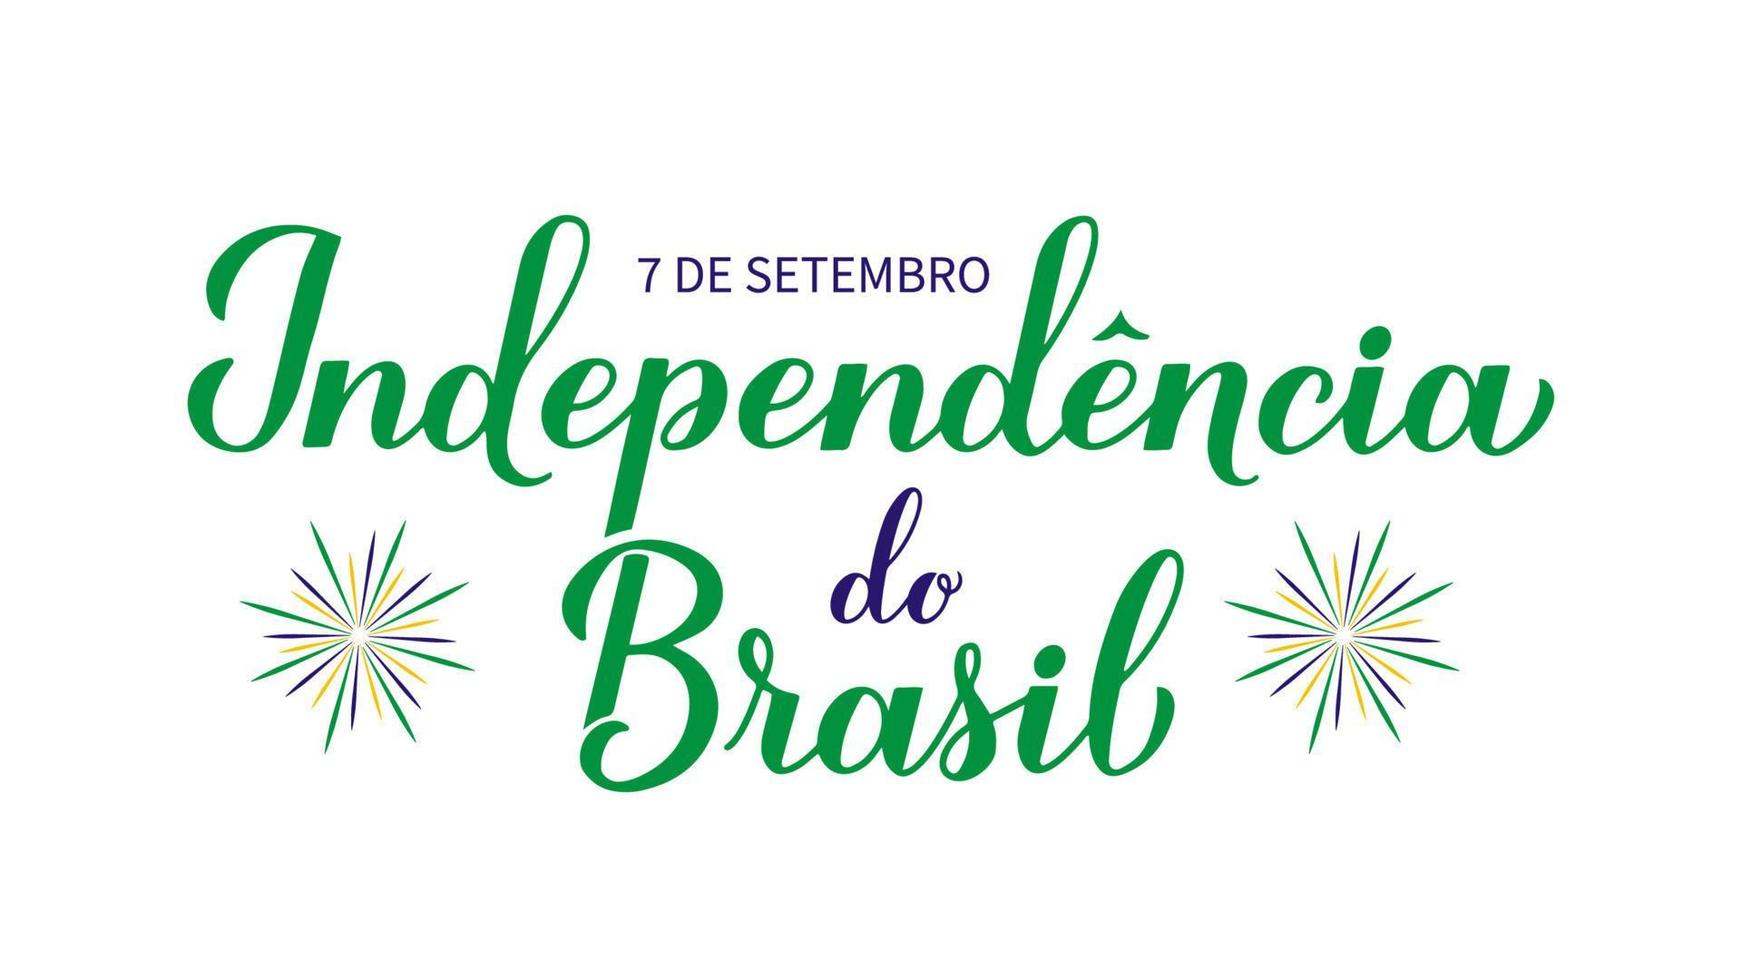 Letras de mano de caligrafía del día de la independencia de brasil en portugués. fiesta brasileña celebrada el 7 de septiembre. plantilla vectorial para afiche tipográfico, pancarta, tarjeta de felicitación, volante, etc. vector